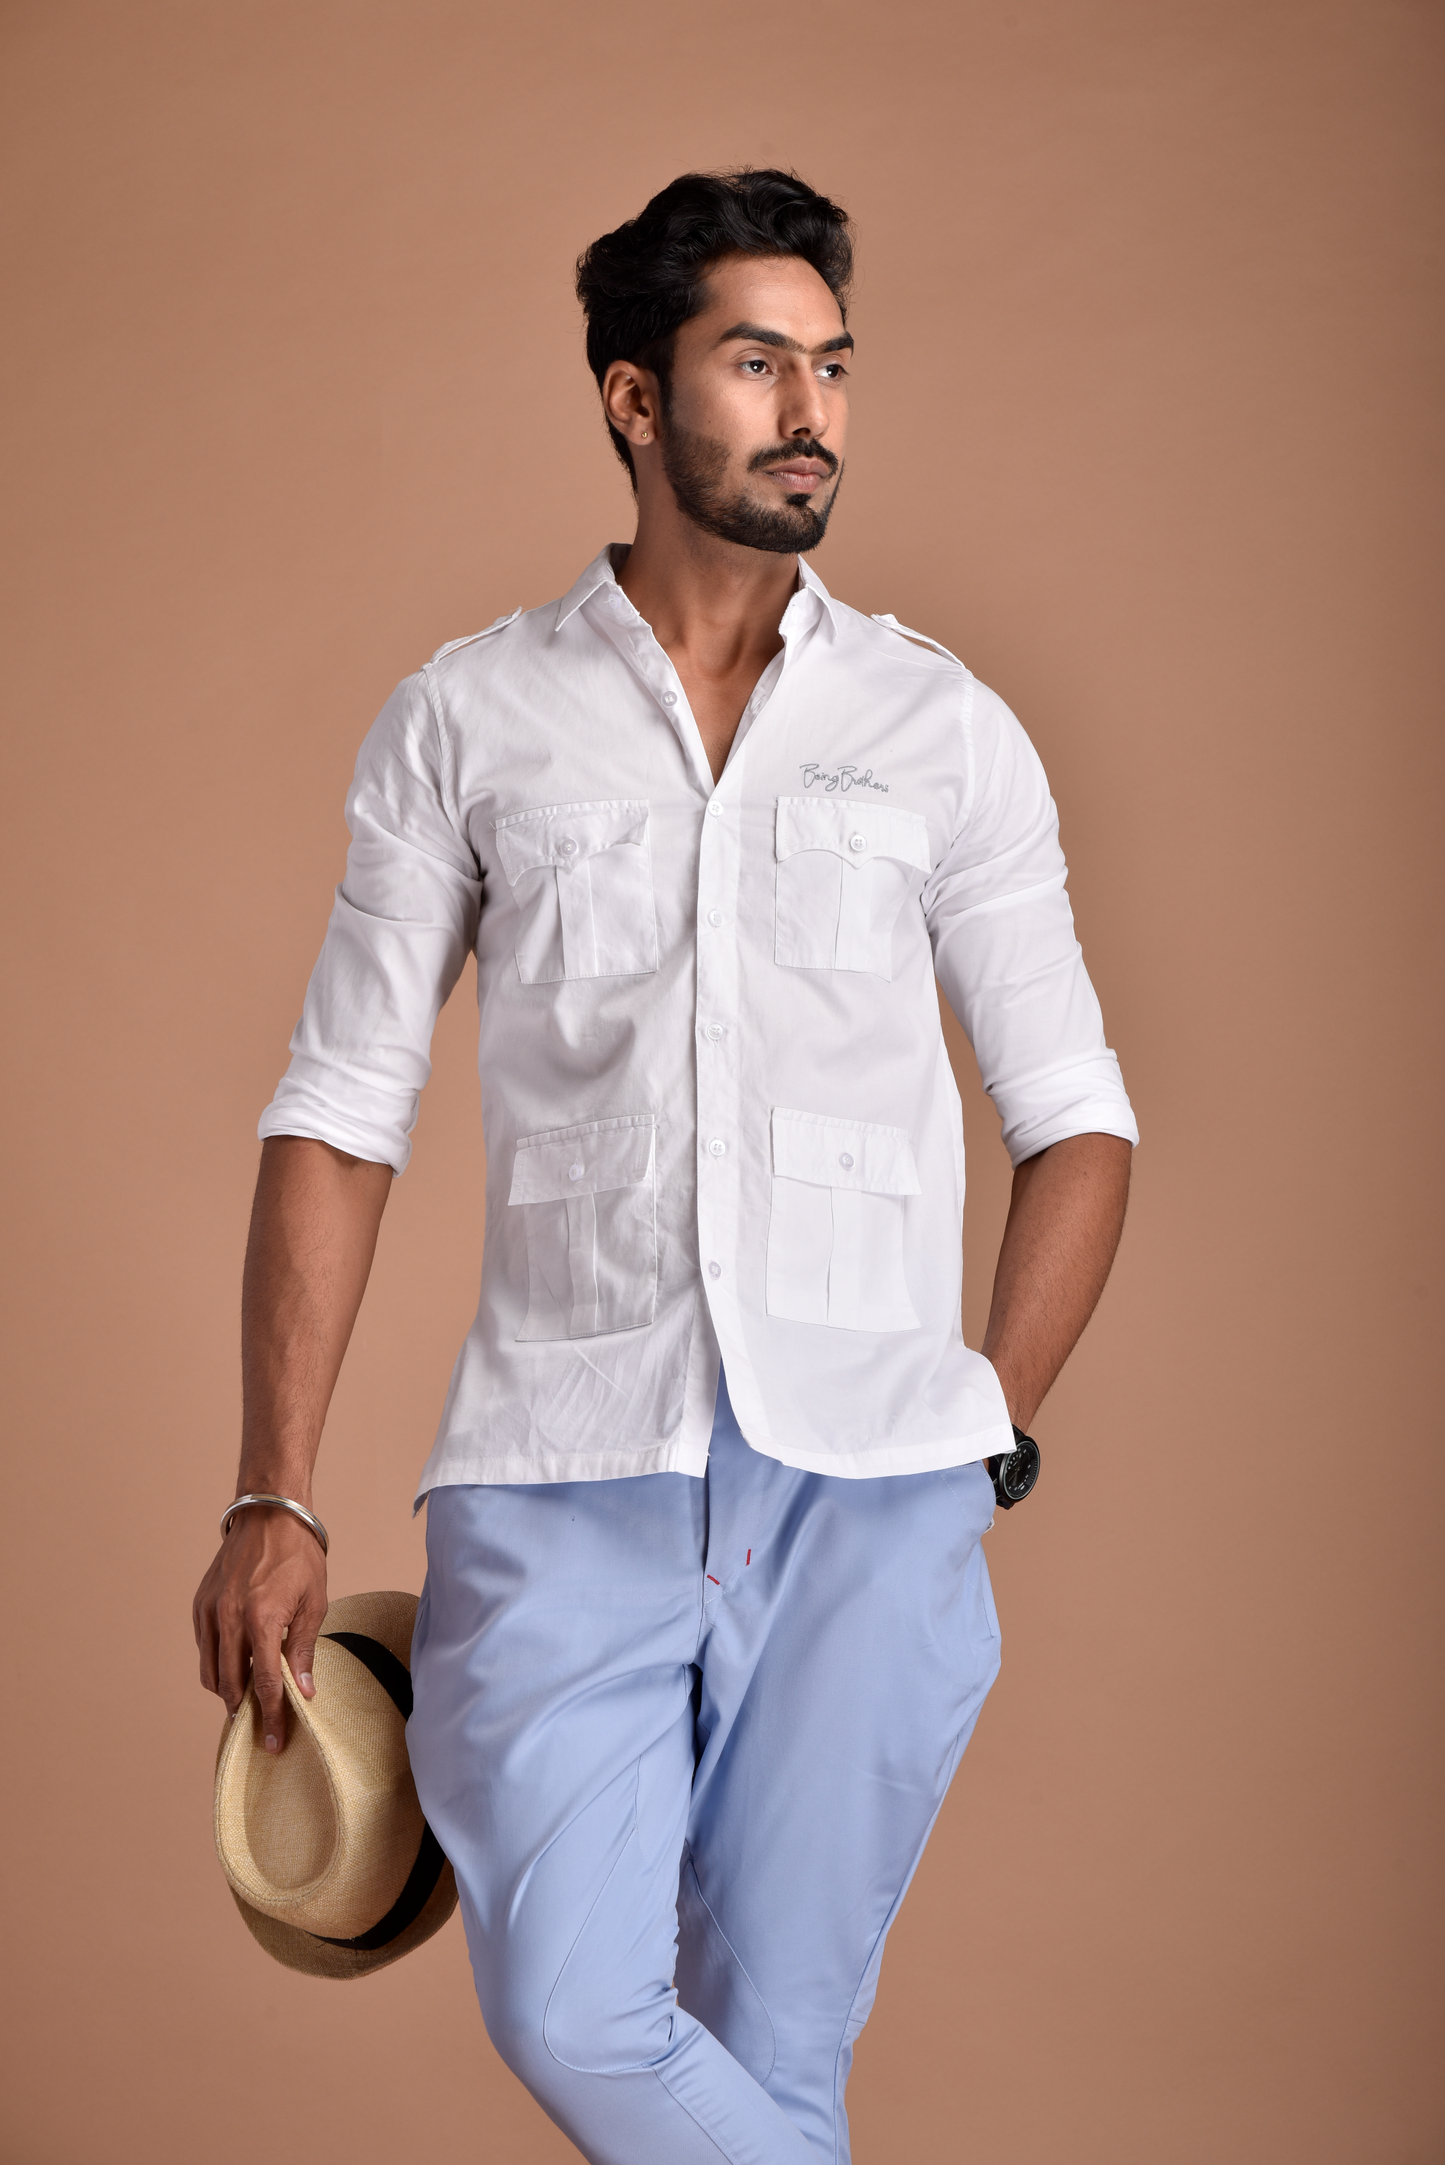 Rajputana Hunting Styled White Shirt